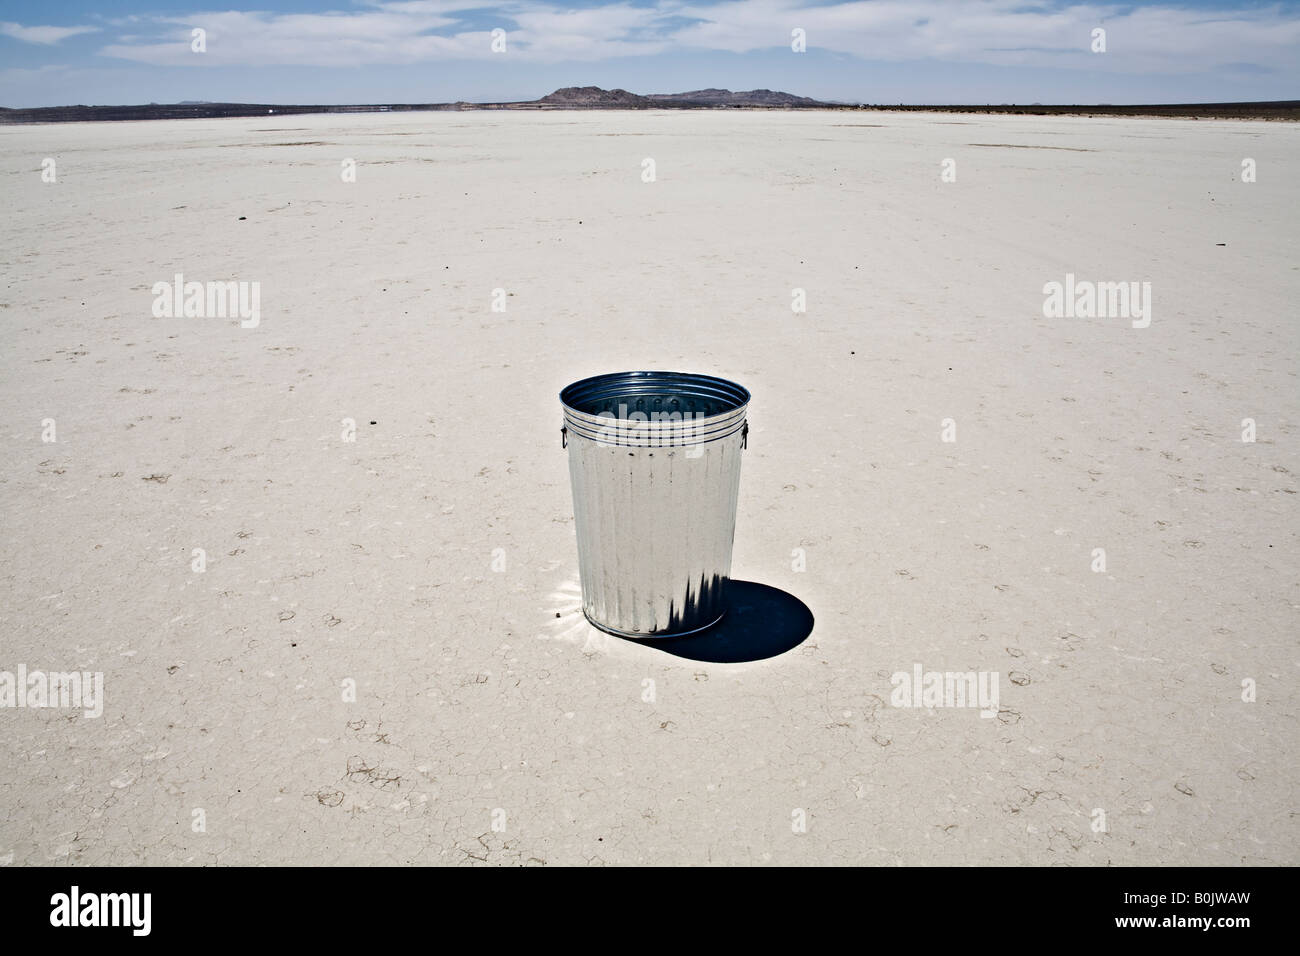 Trashcan in the desertTrashcan in the desert Stock Photo